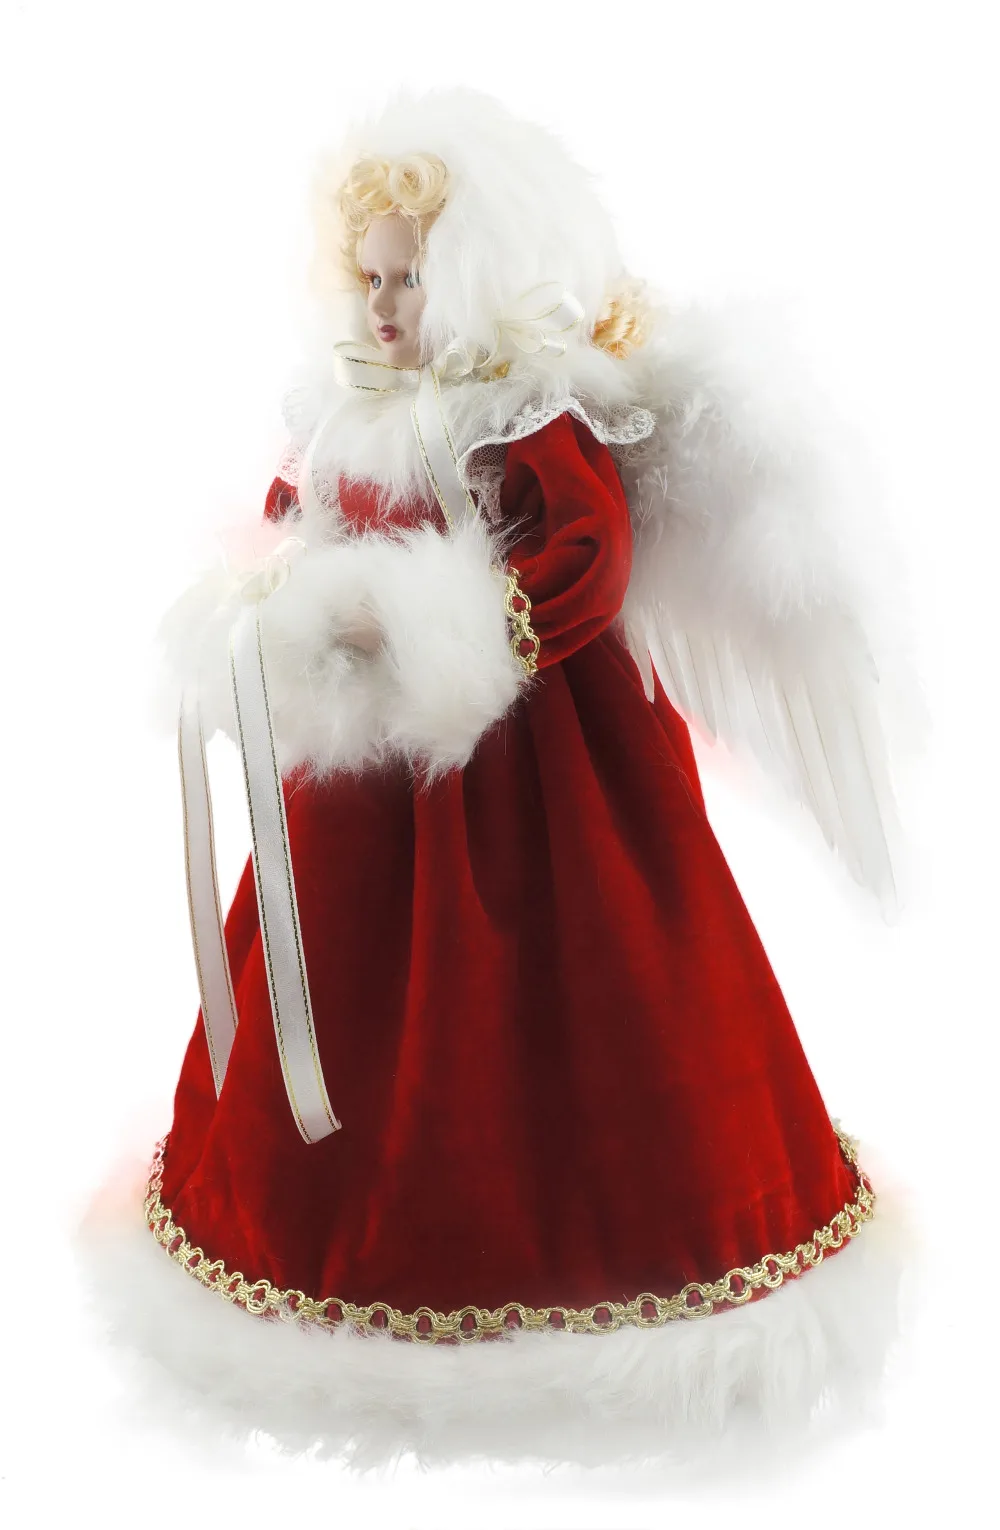 Козетта благородное Рождественское украшение Ангел фарфоровая кукла Домашняя Коллекция крылья бант с цветами 14"